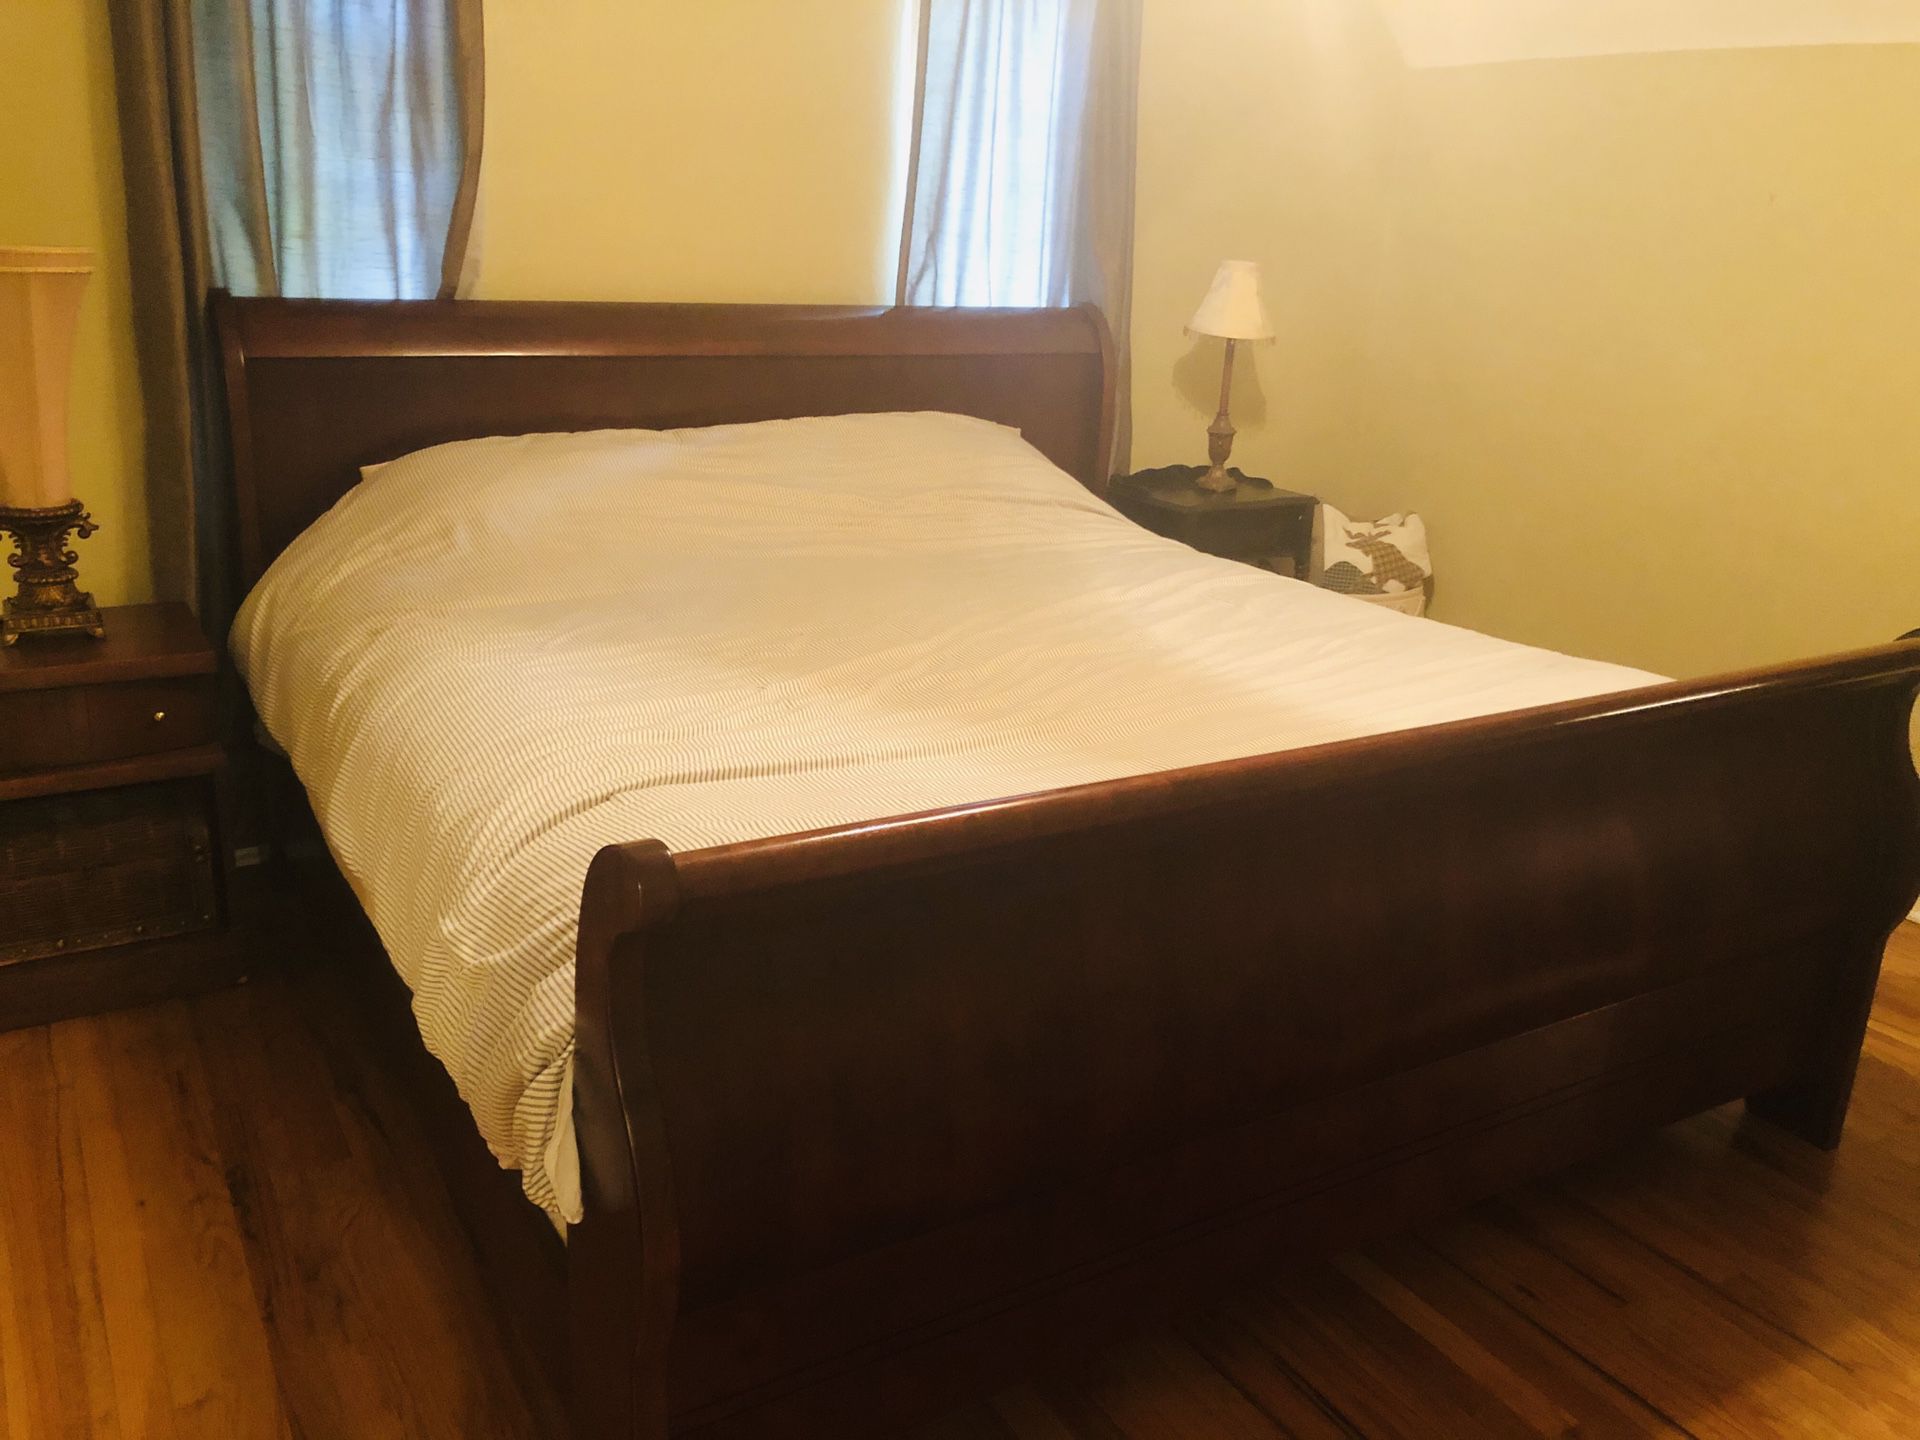 Bedroom set $500 OBO